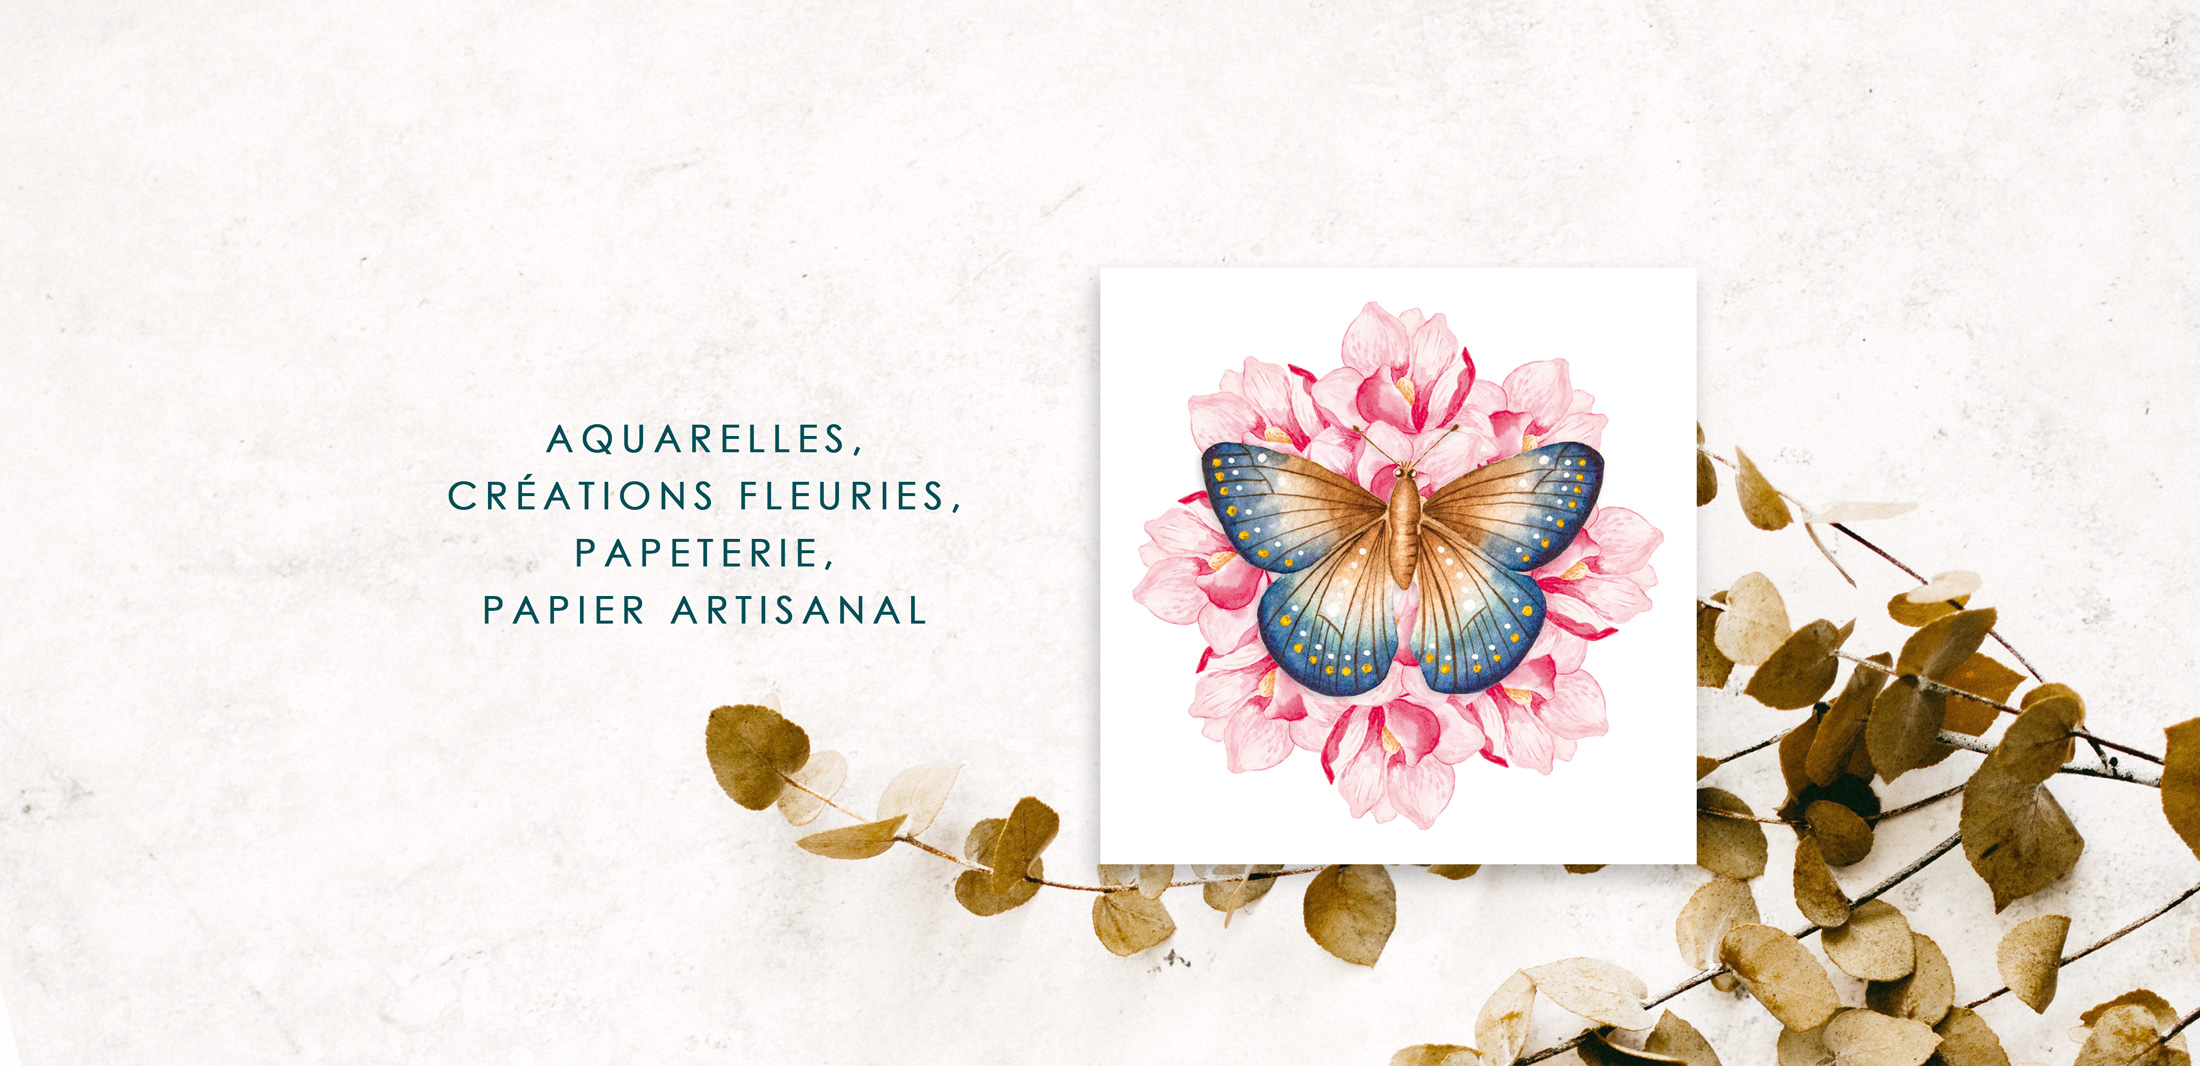 Aquarelle, créations fleuries, papeterie, papier artisanal